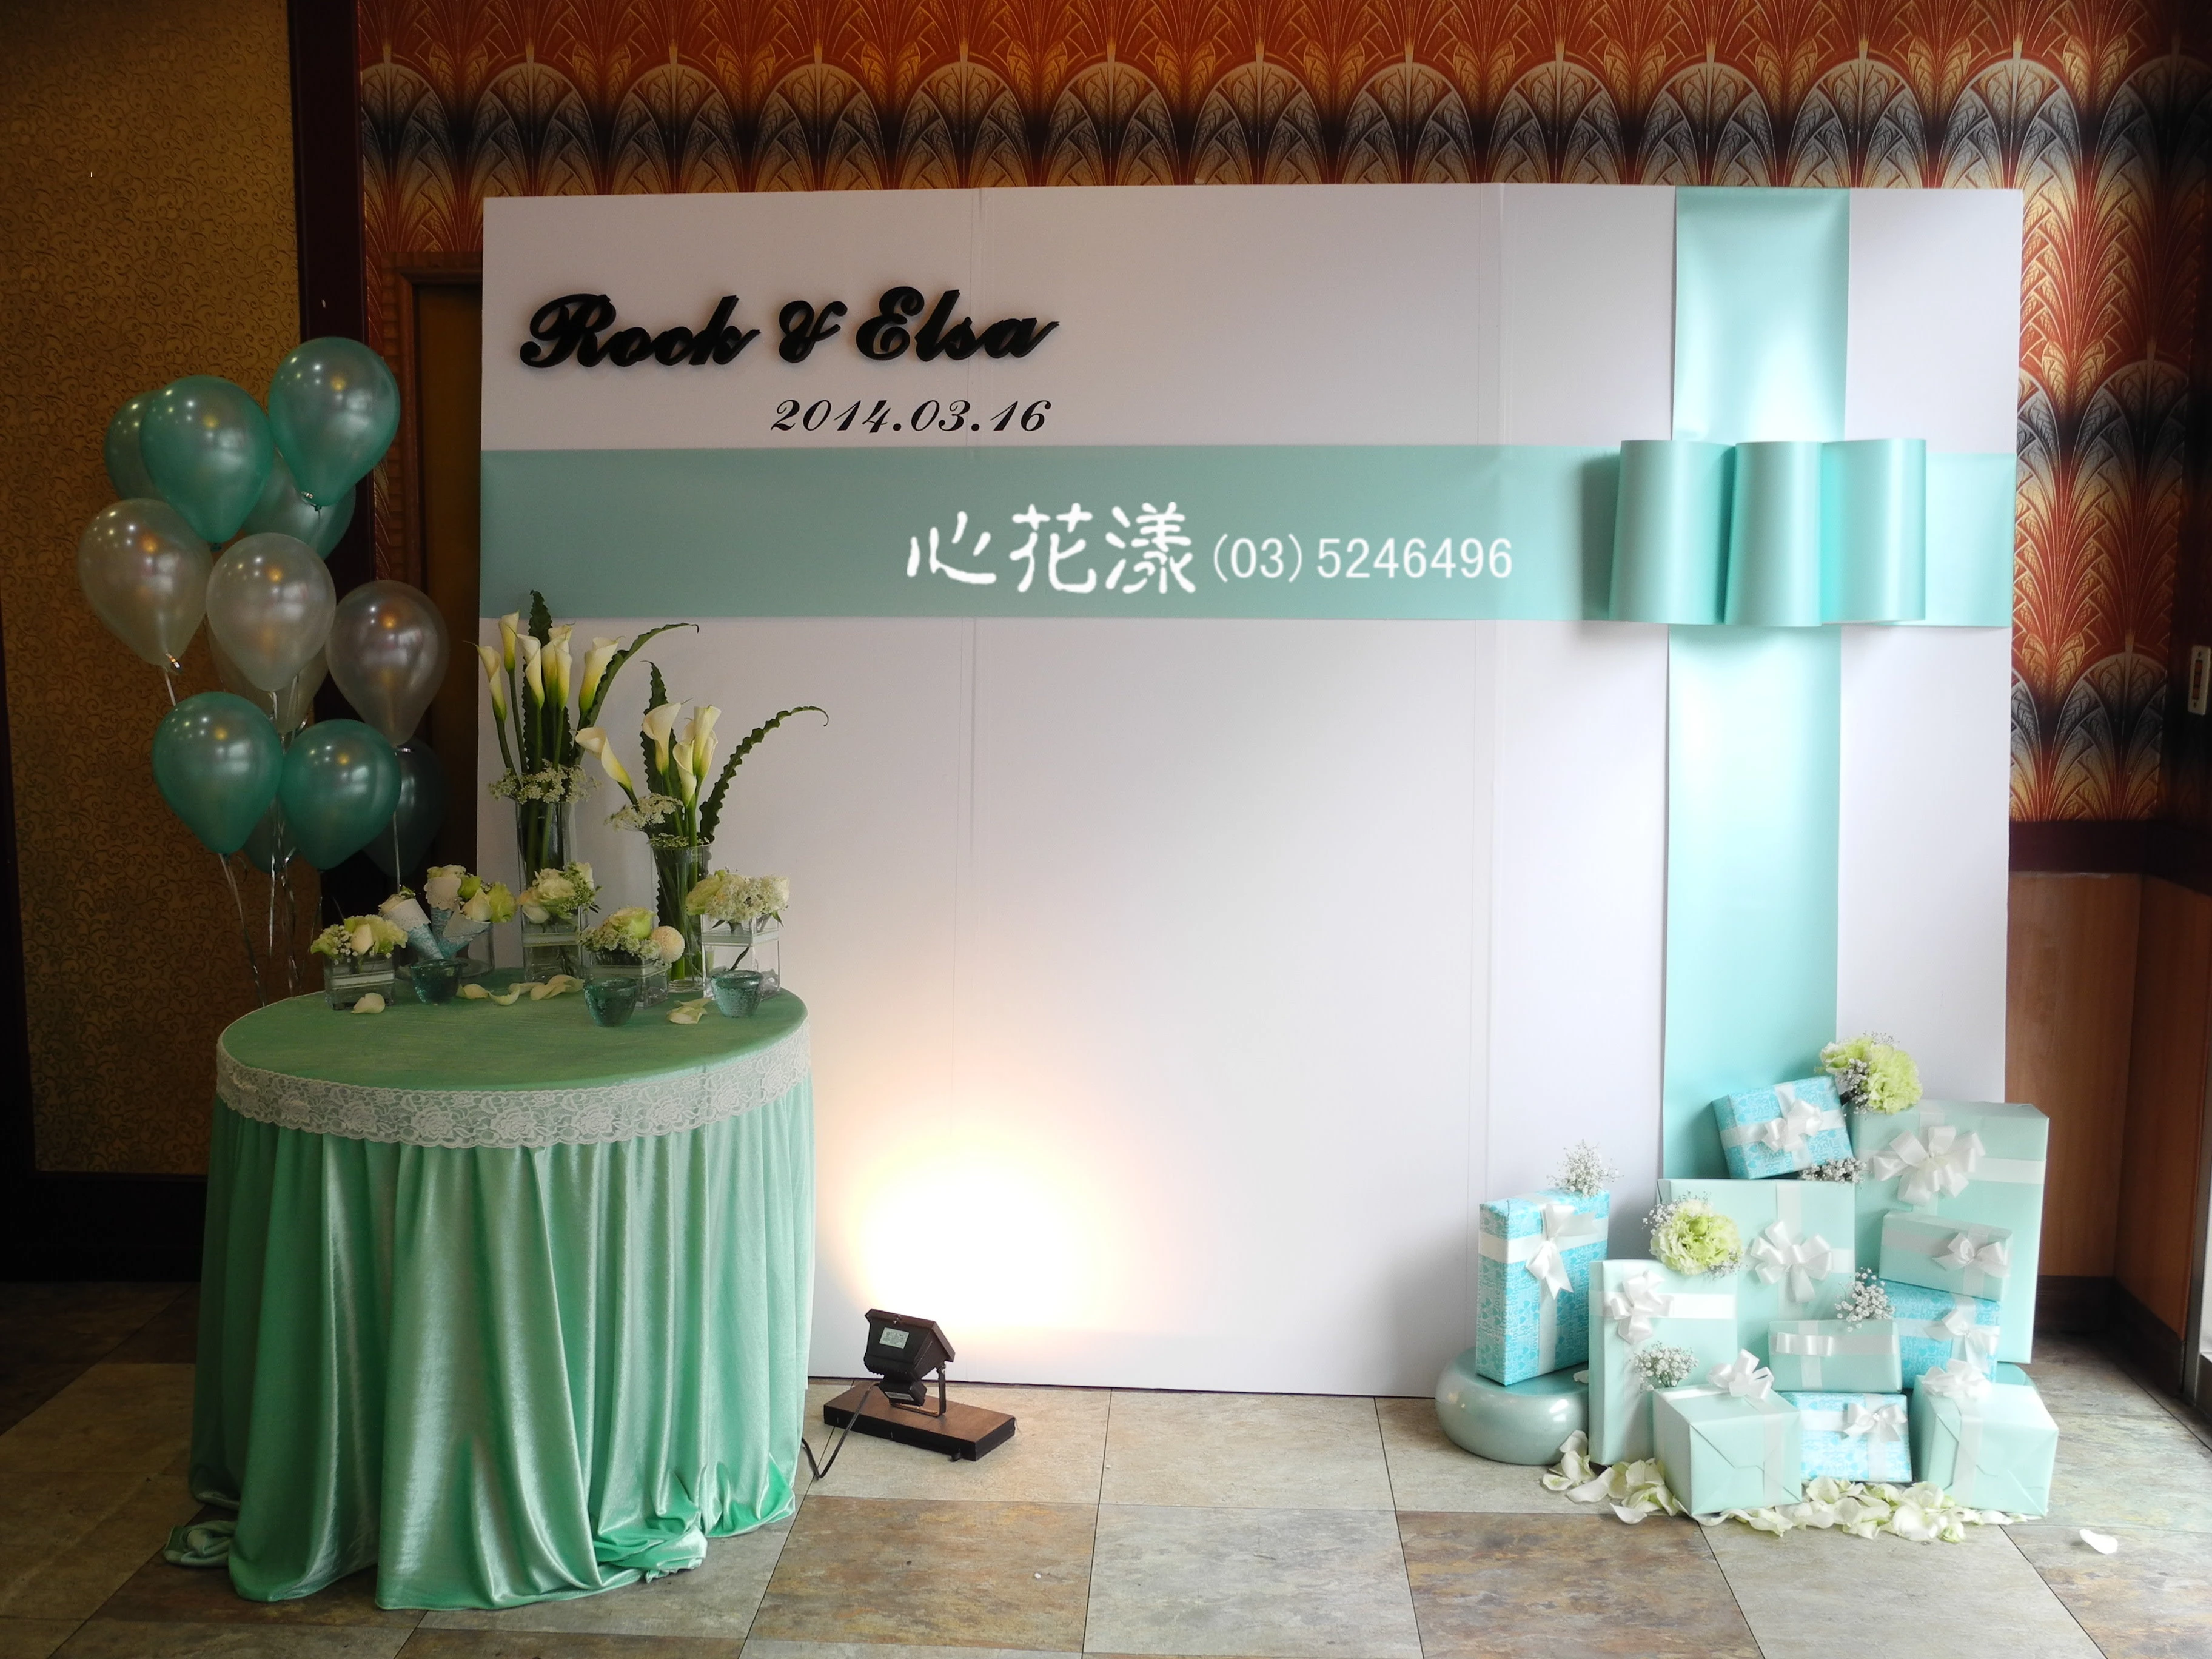 新竹婚禮佈置-主題背板及花藝設計